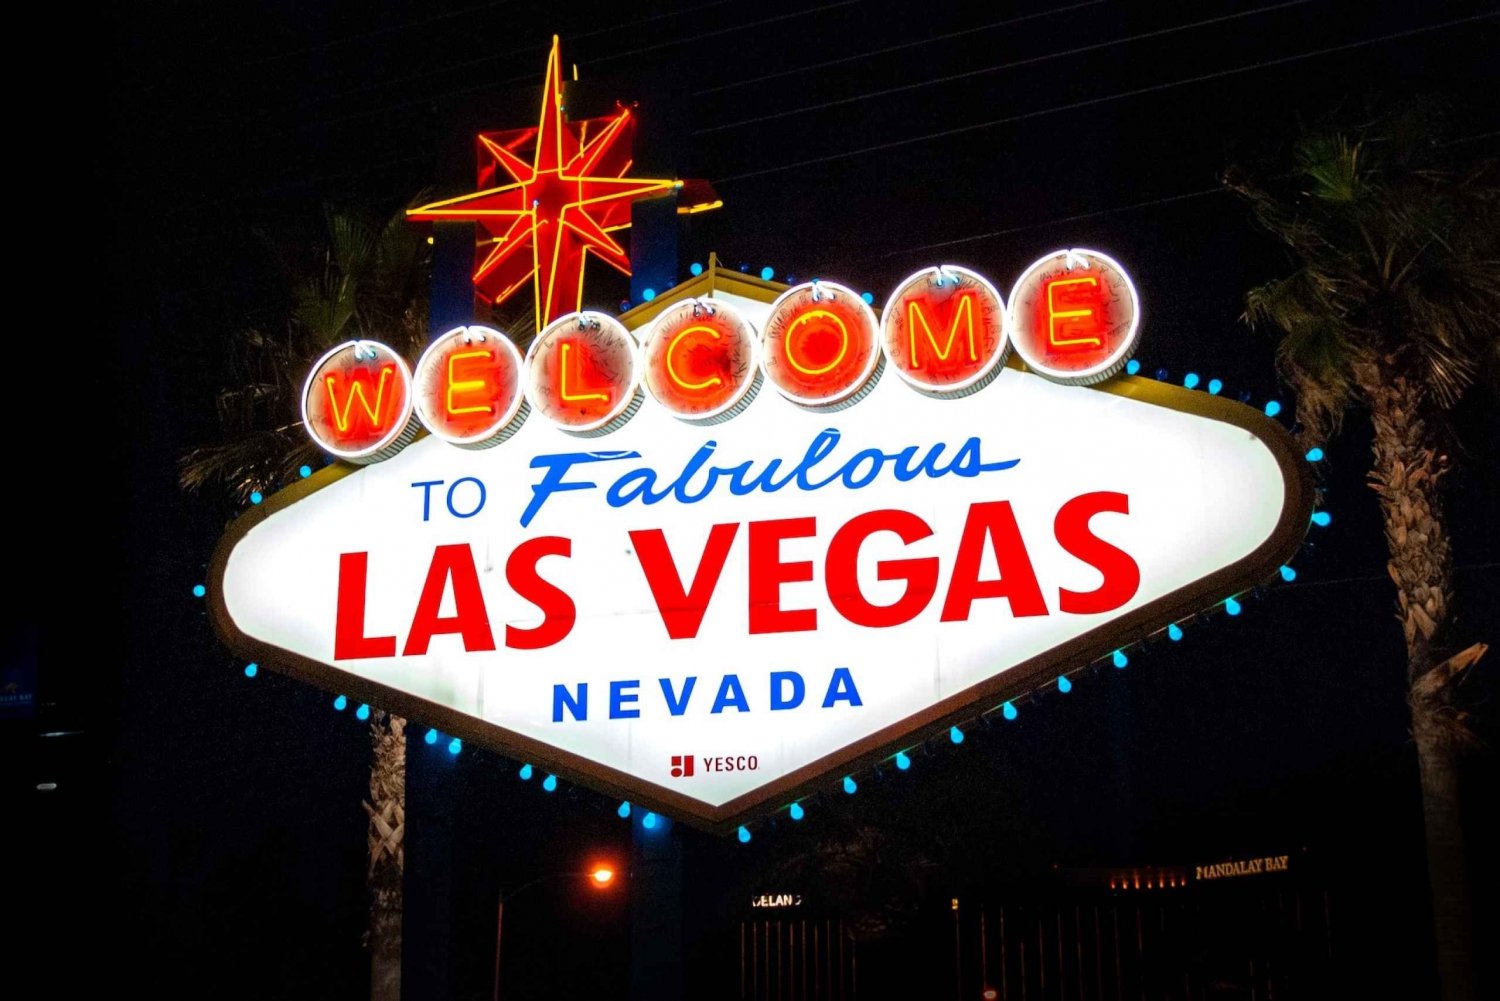 Las Vegas Night tour